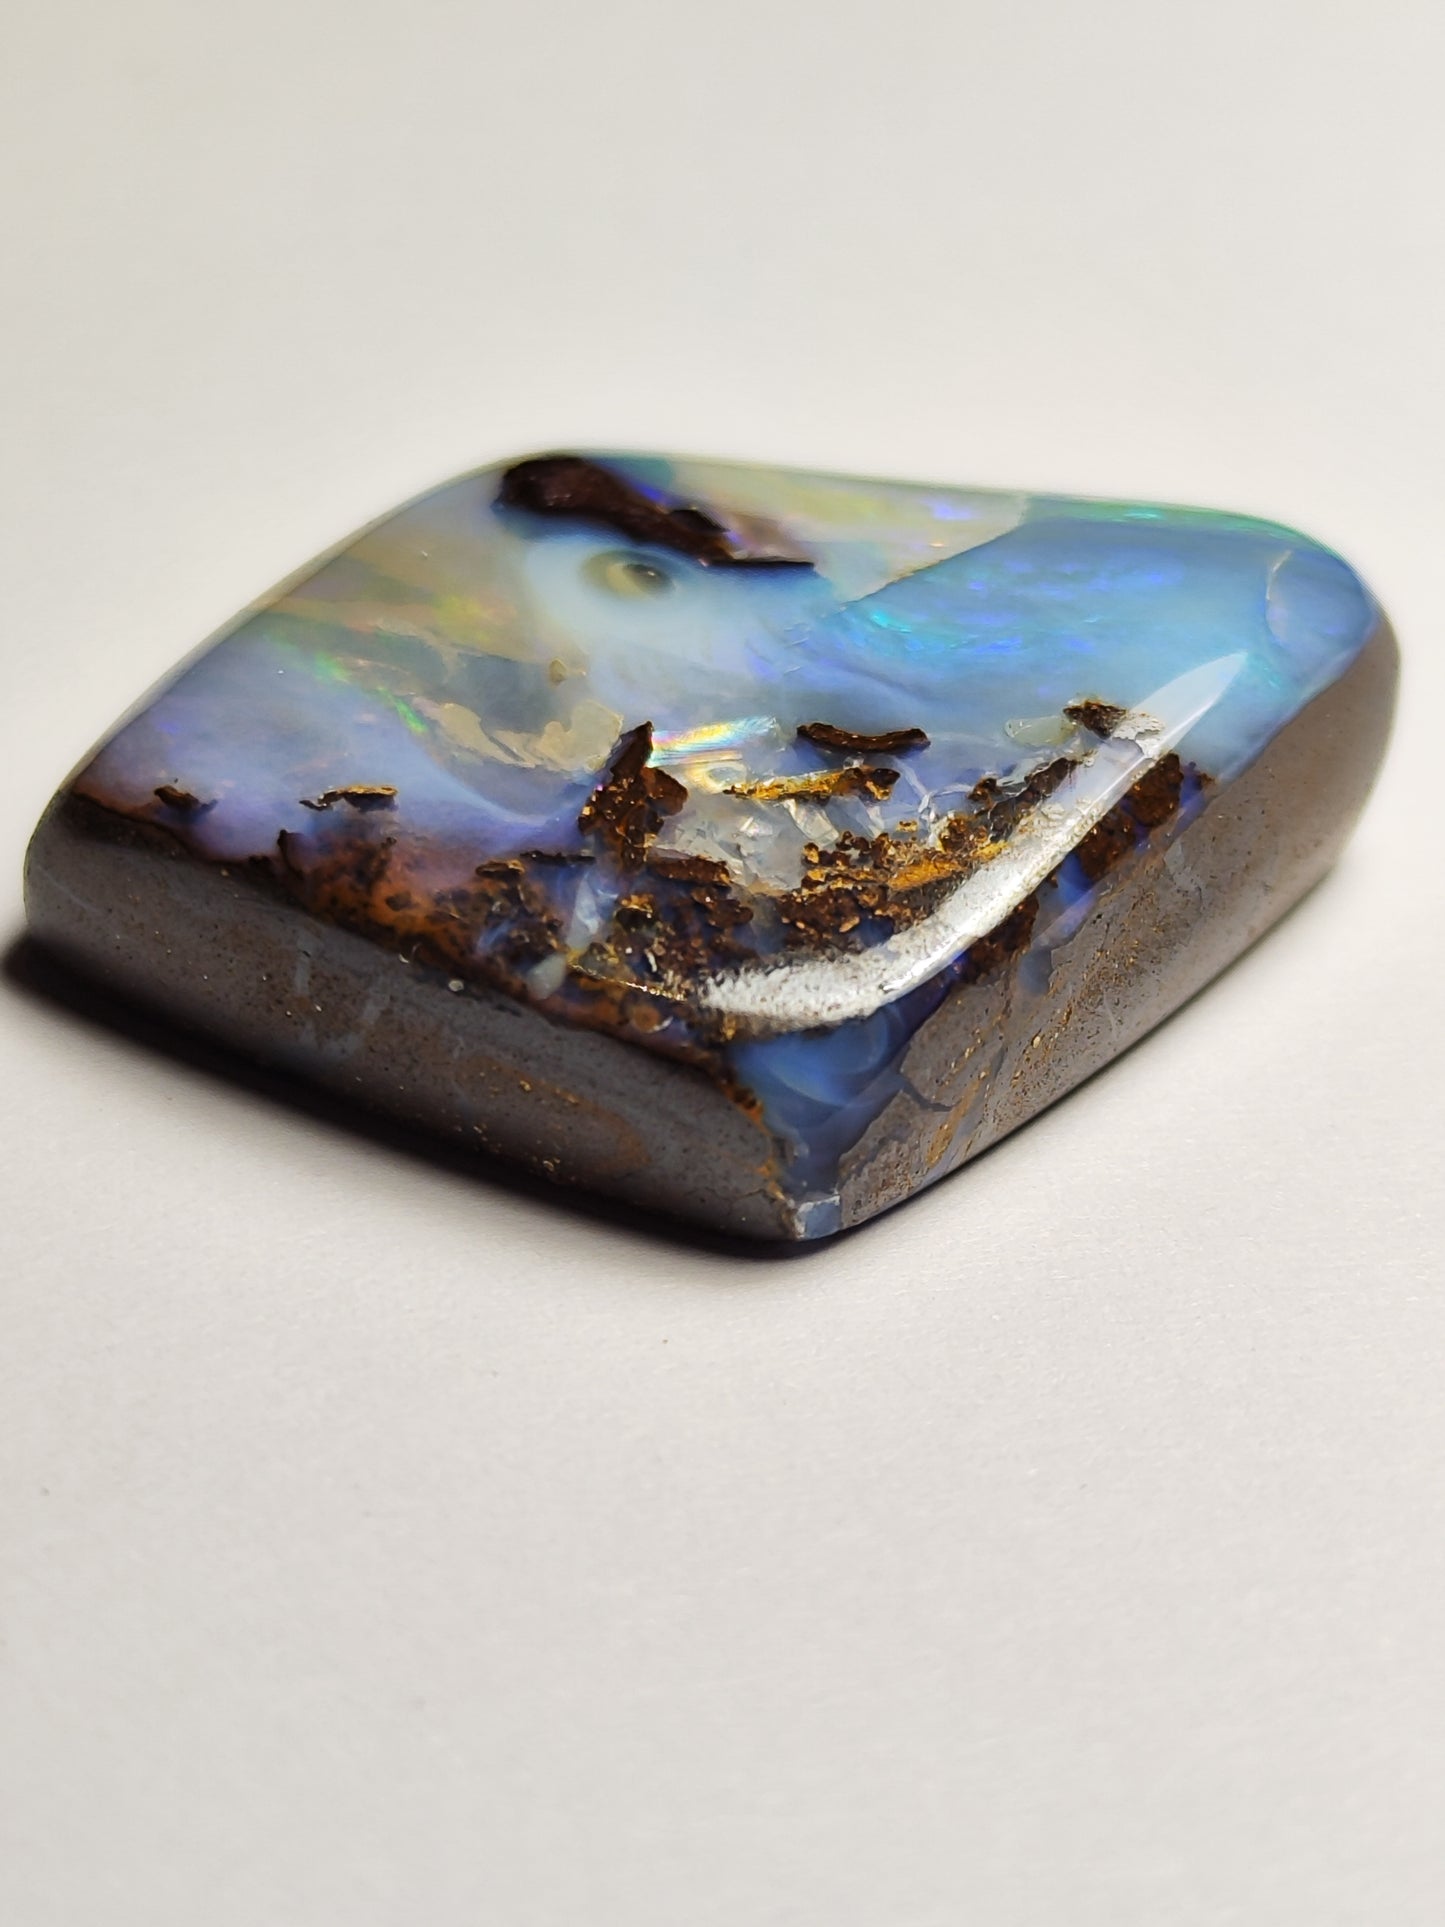 Opale boulder spécimen rare